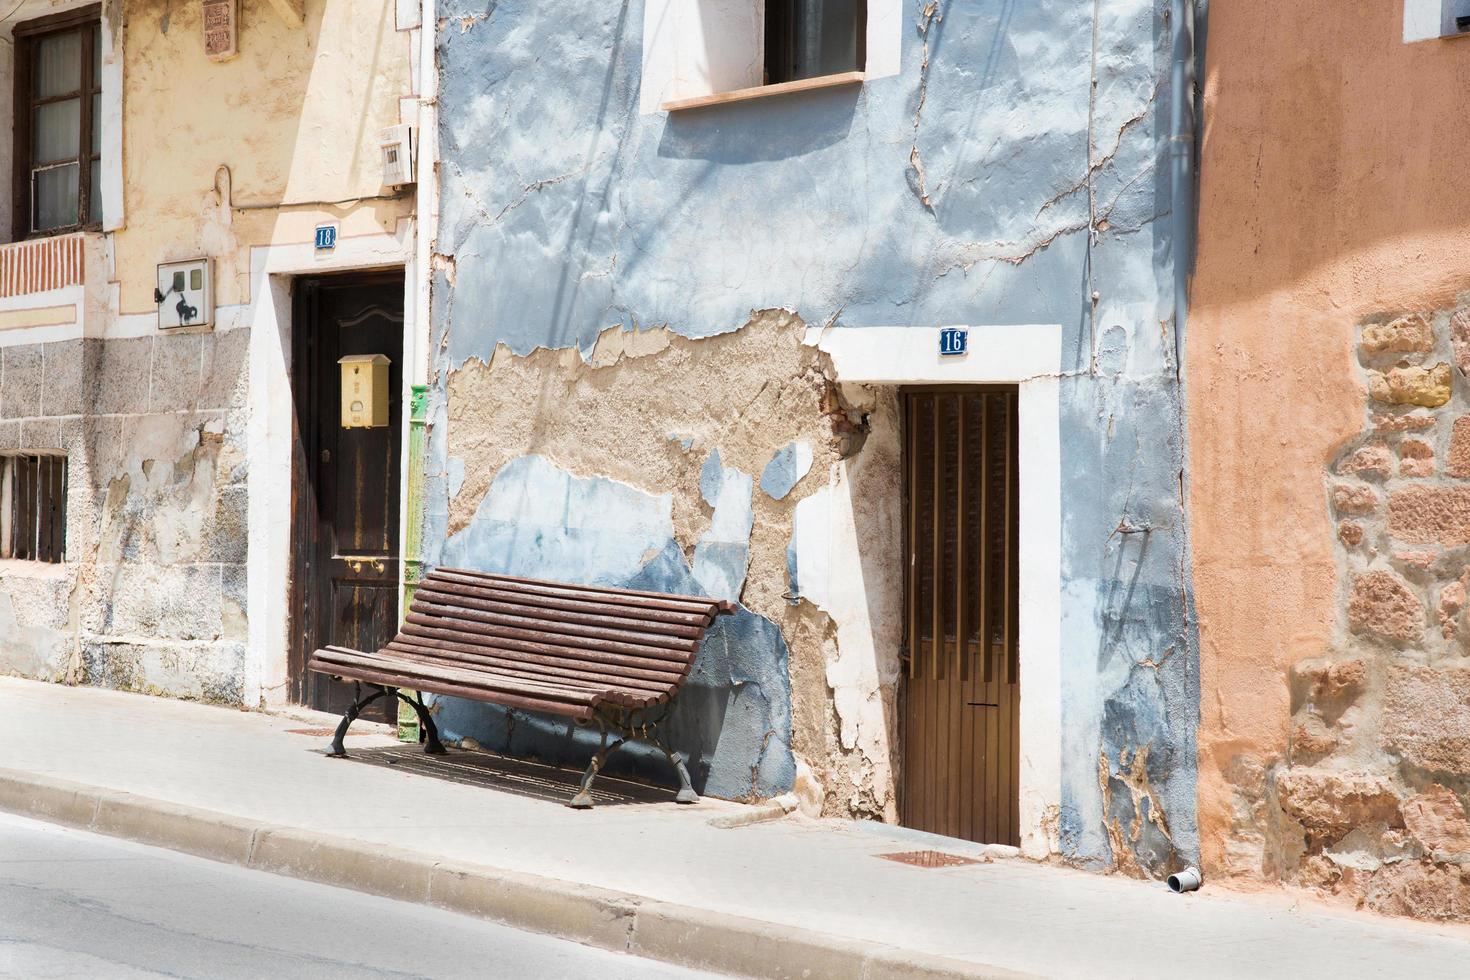 fachadas coloridas en un pueblo español en verano. banco de madera frente al azul. foto